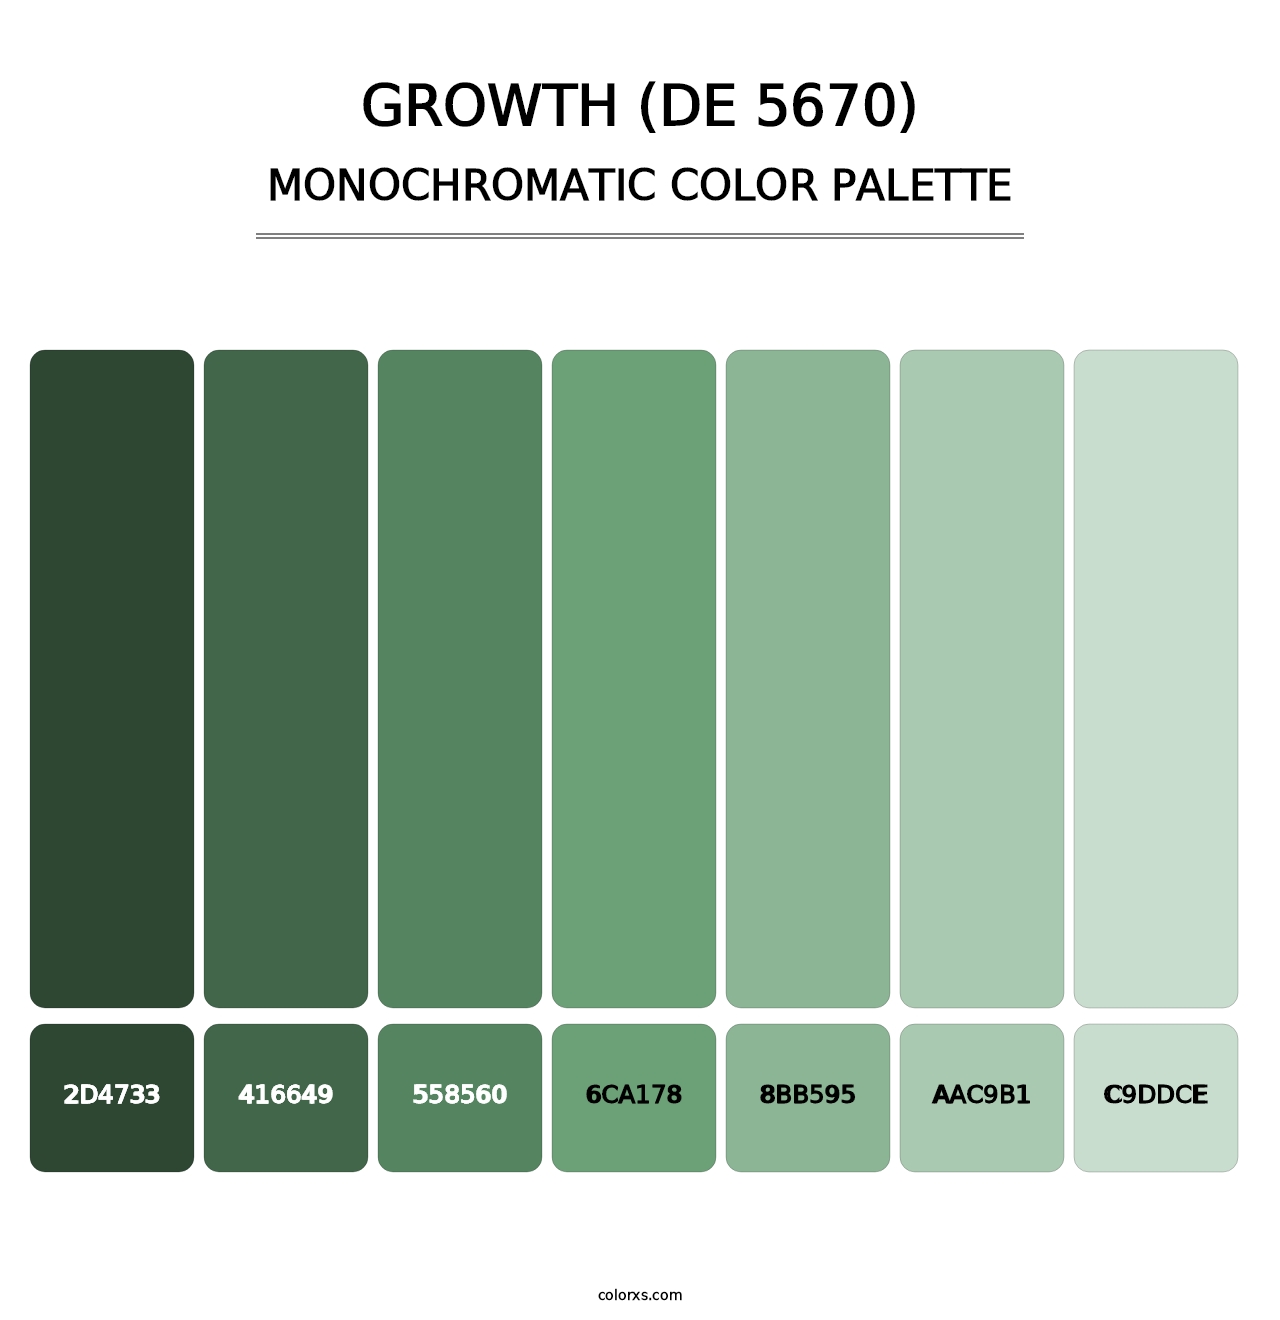 Growth (DE 5670) - Monochromatic Color Palette